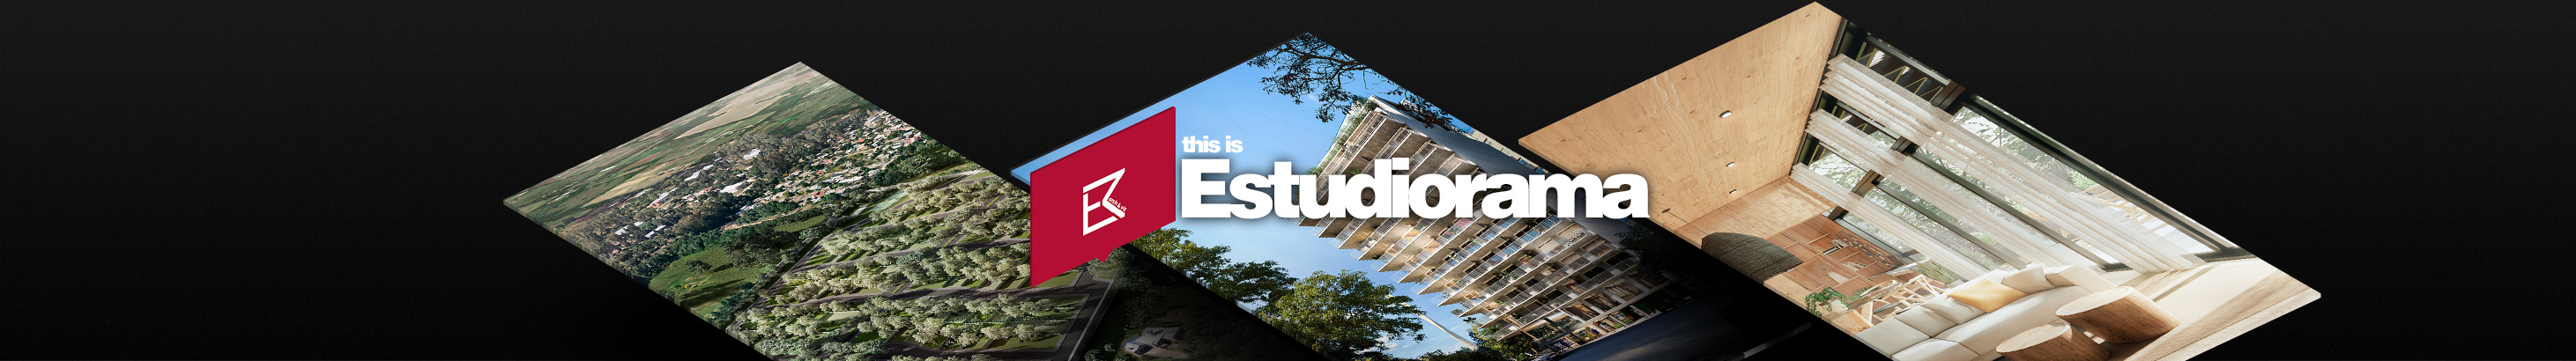 Estudiorama ​'s profile banner